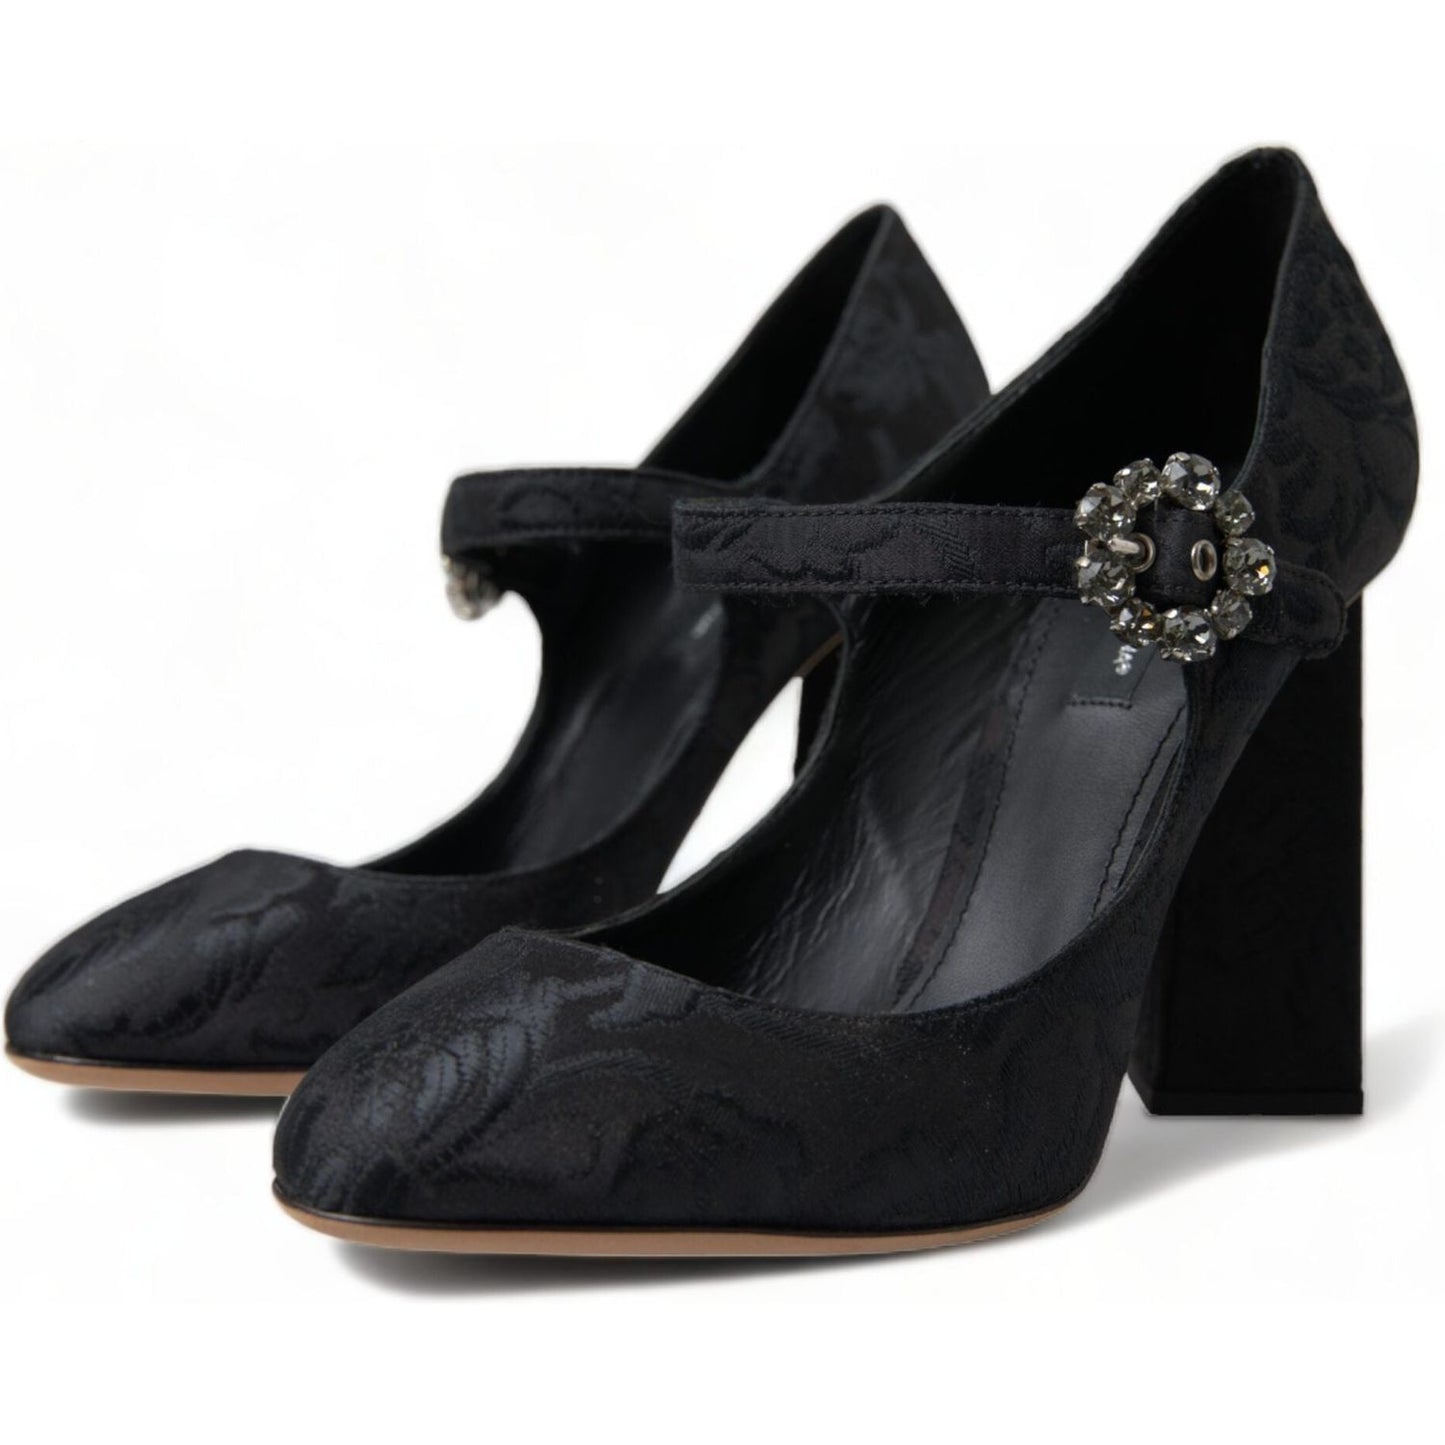 Dolce & GabbanaChic Black Brocade Mary Janes PumpsMcRichard Designer Brands£419.00